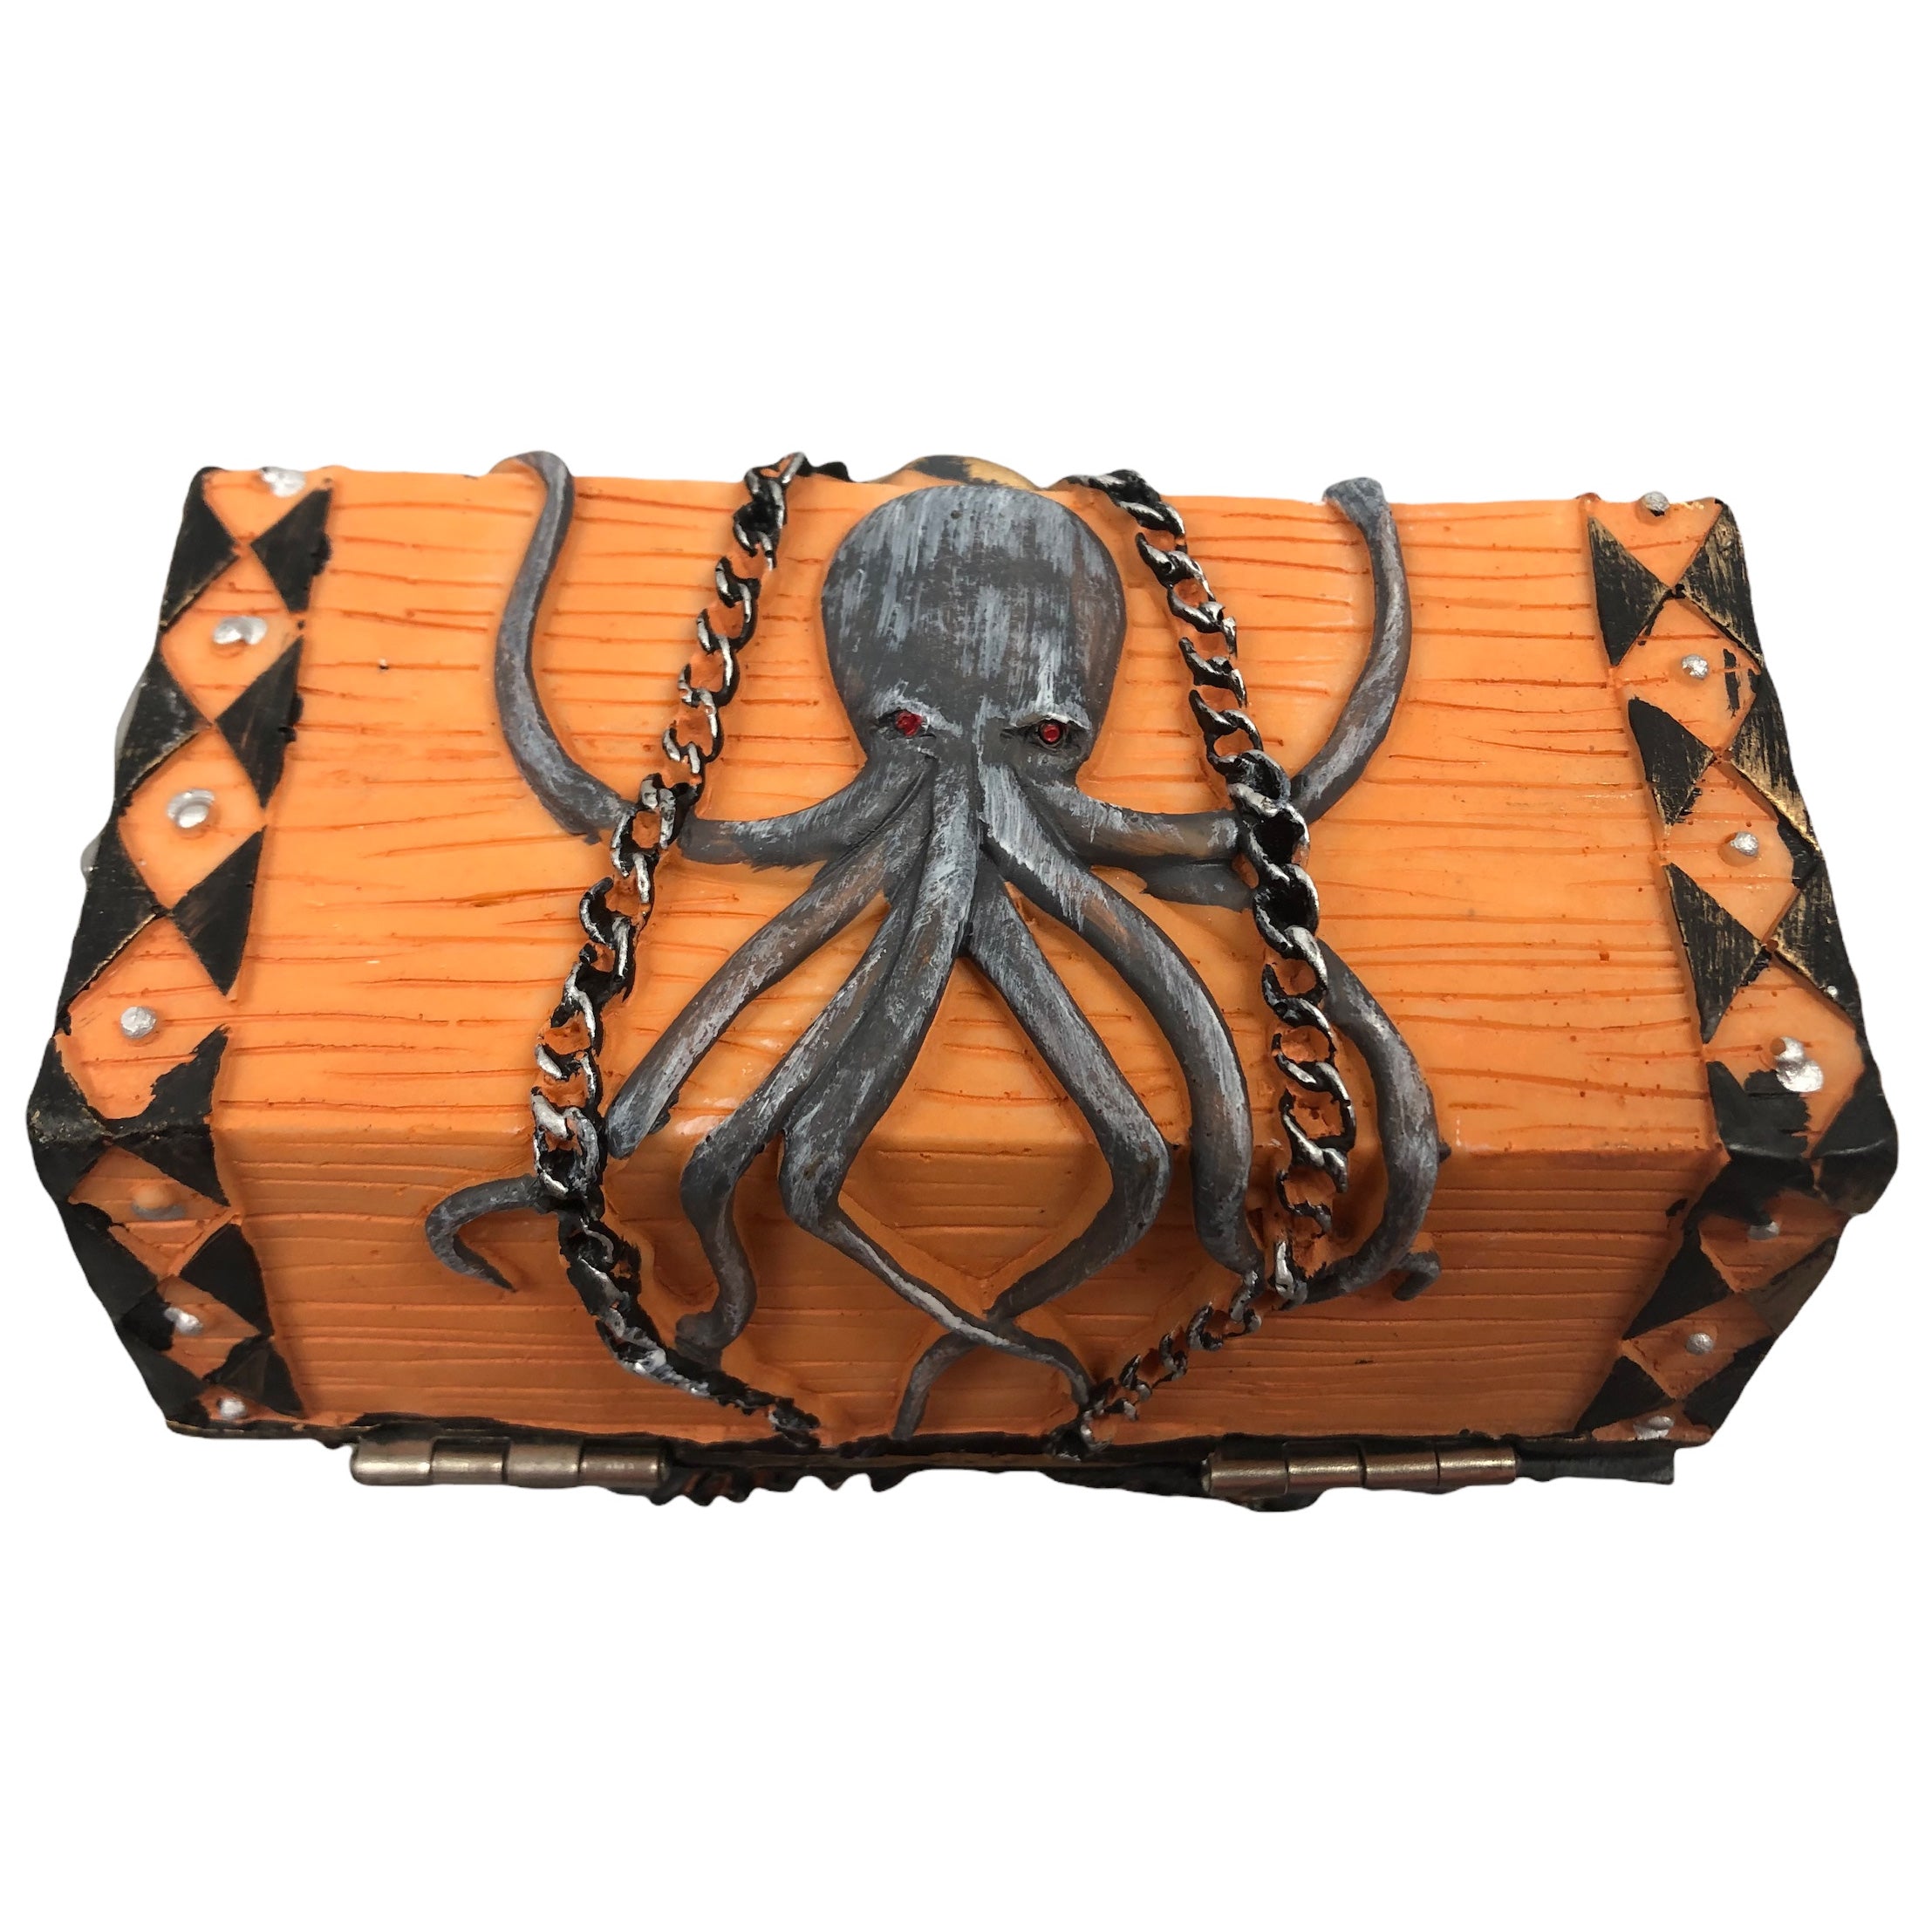 Buccaneer Treasure Octopus Chest Start Your Adventure